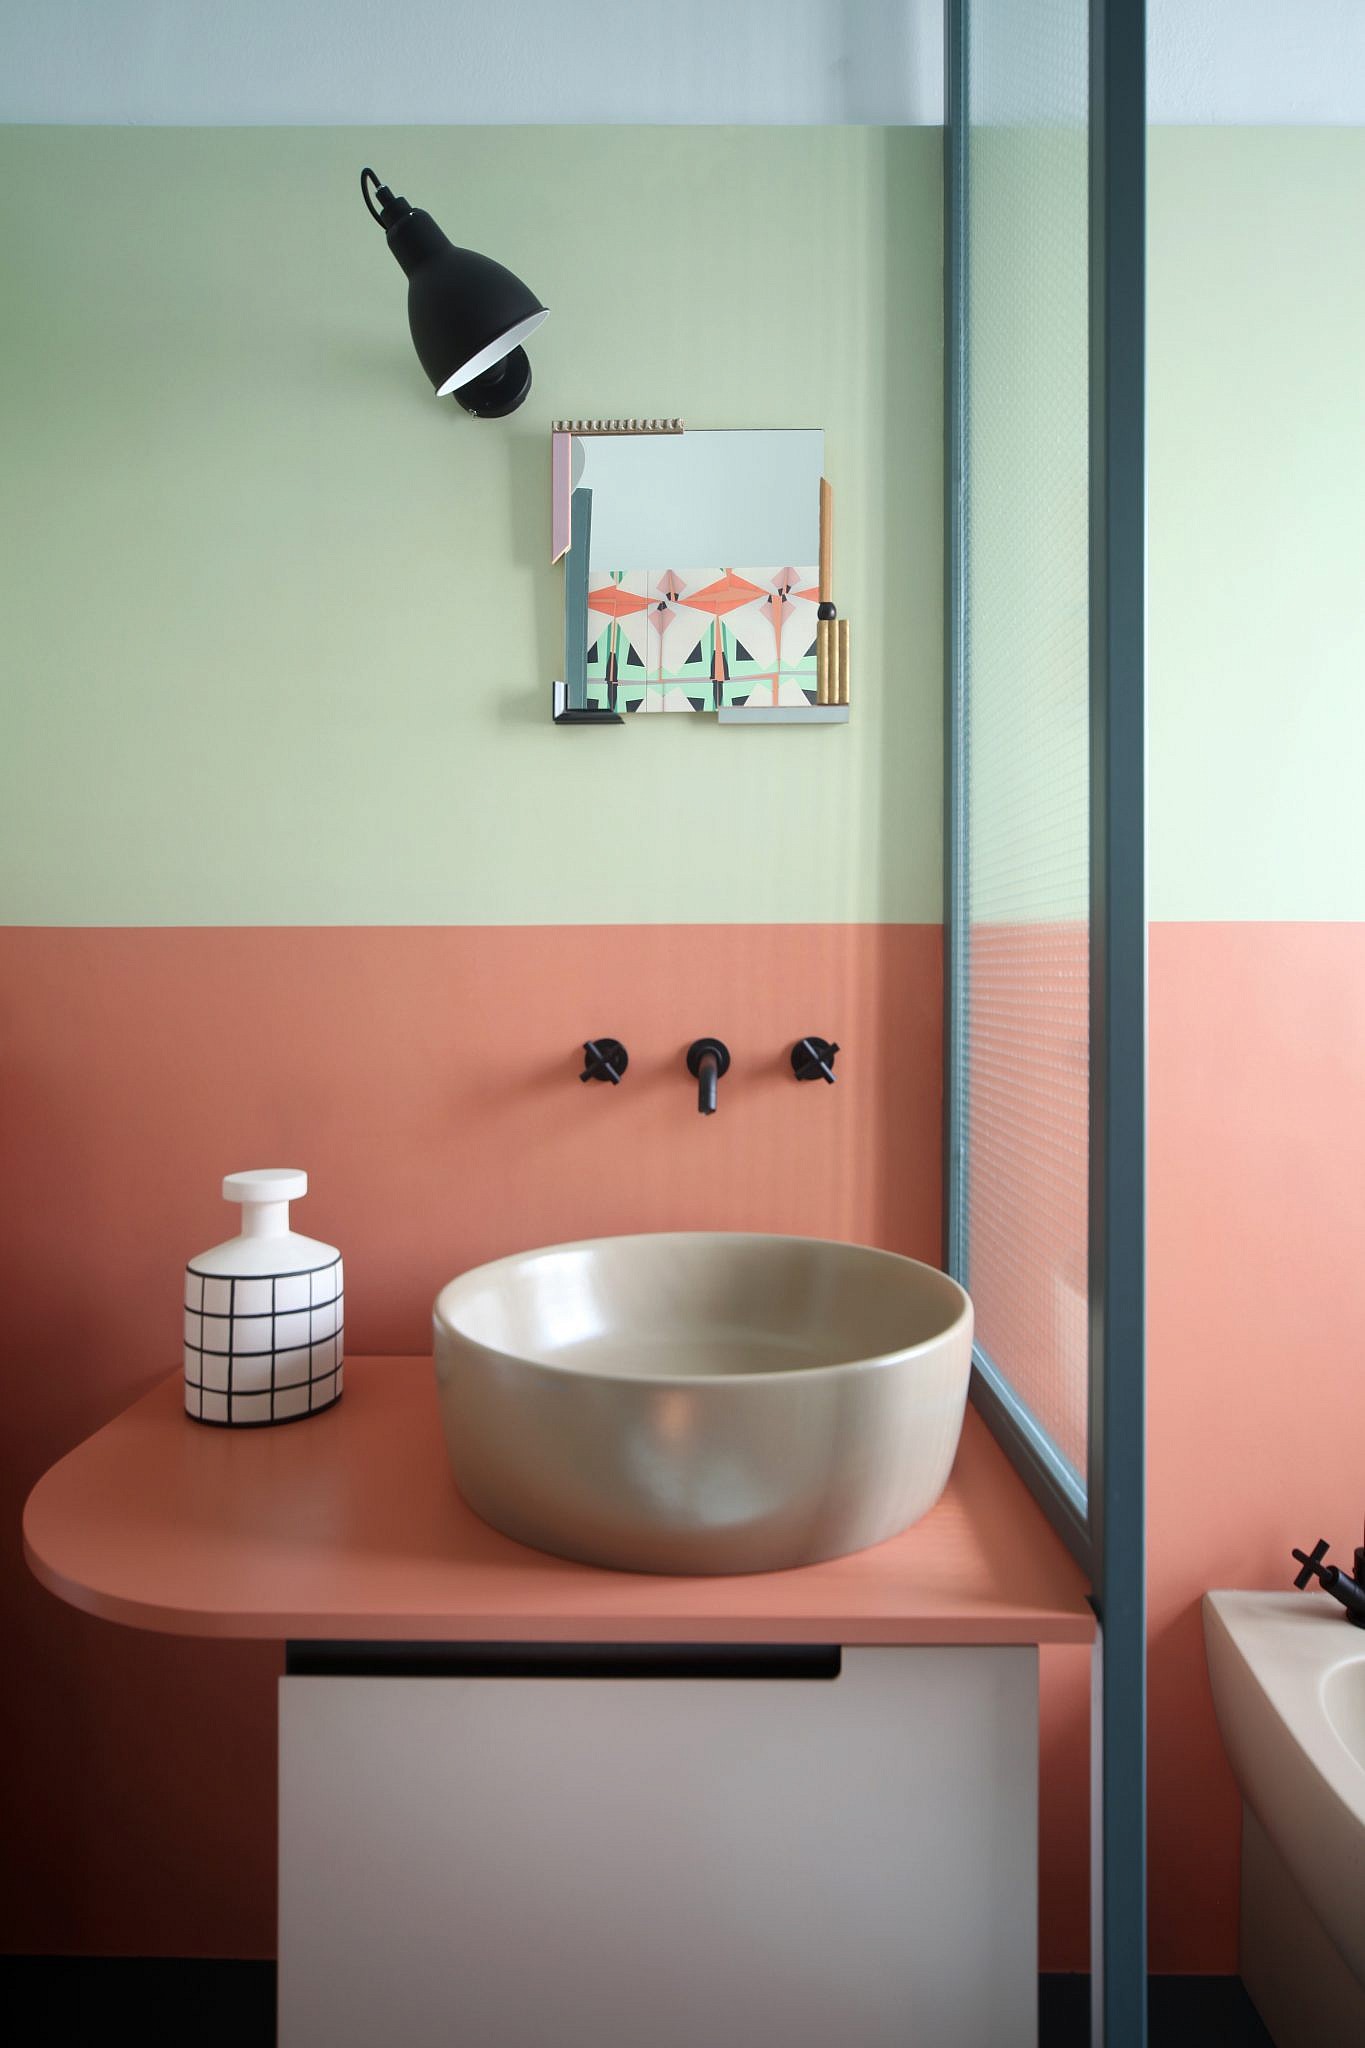 צבעים ילדותיים והומור בחדר האמבטיה | עיצוב: marcante &#8211; testa, צילום: Carola Ripamonti